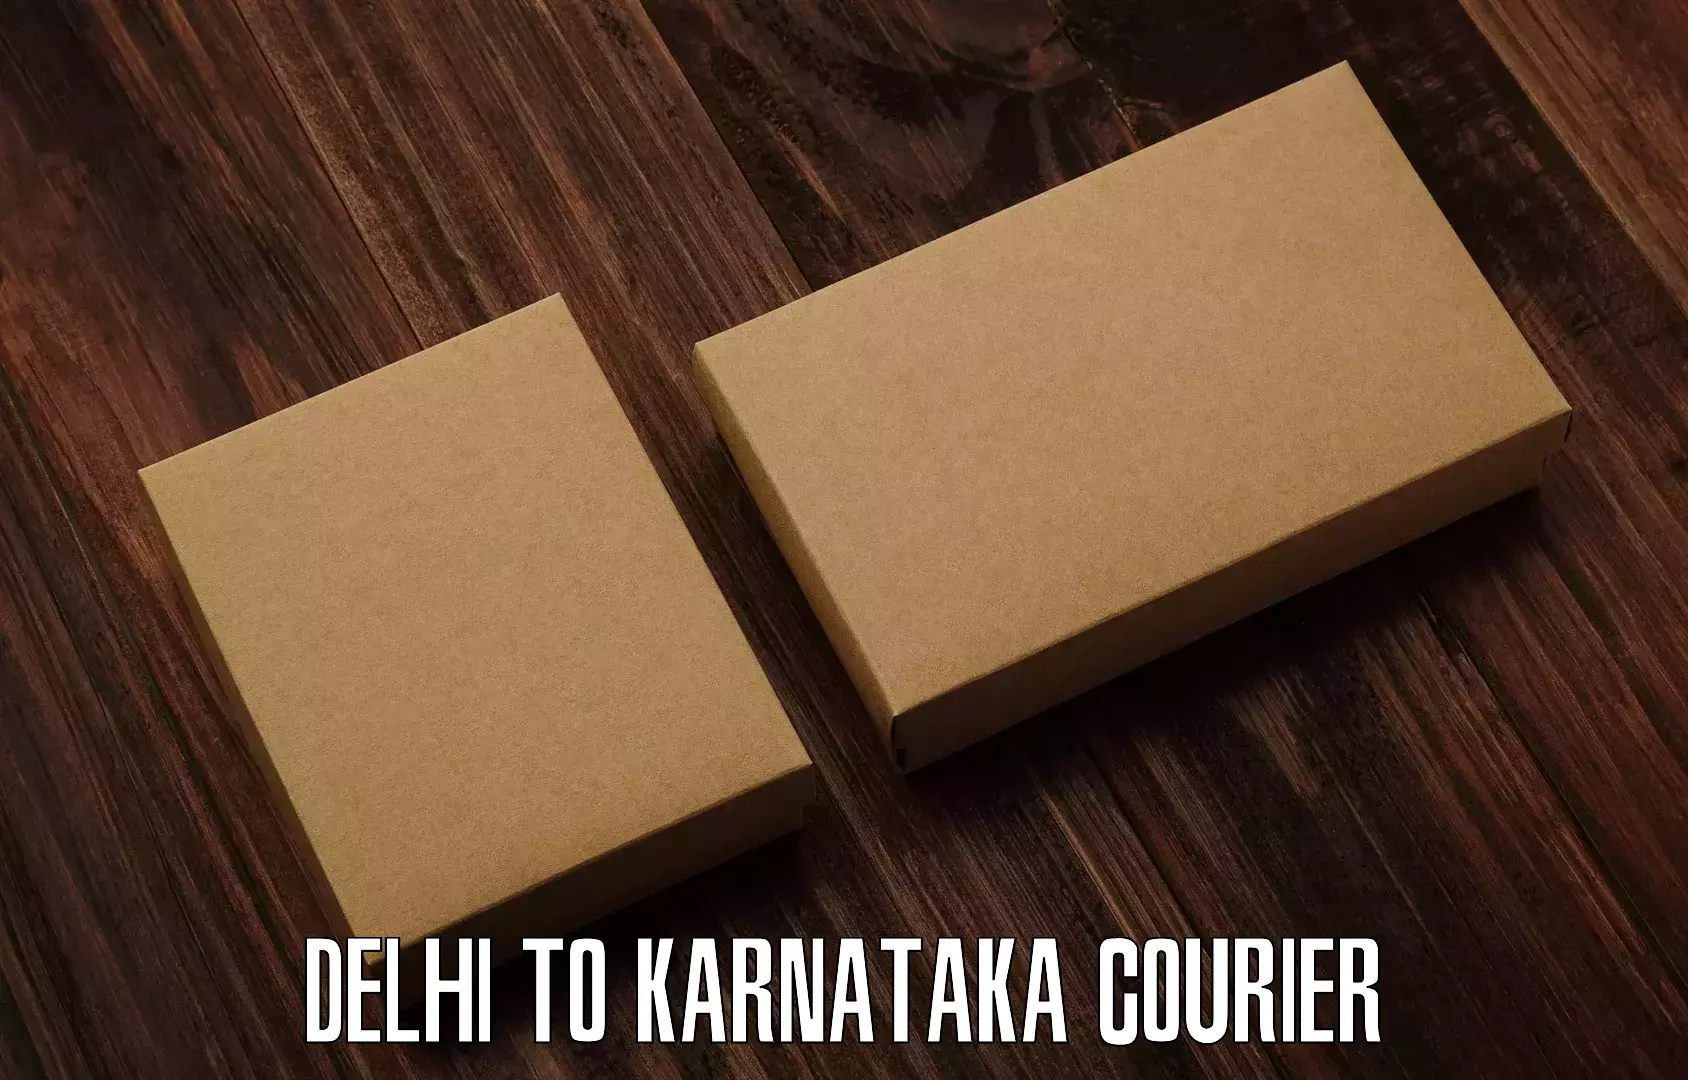 24/7 courier service in Delhi to Belgaum